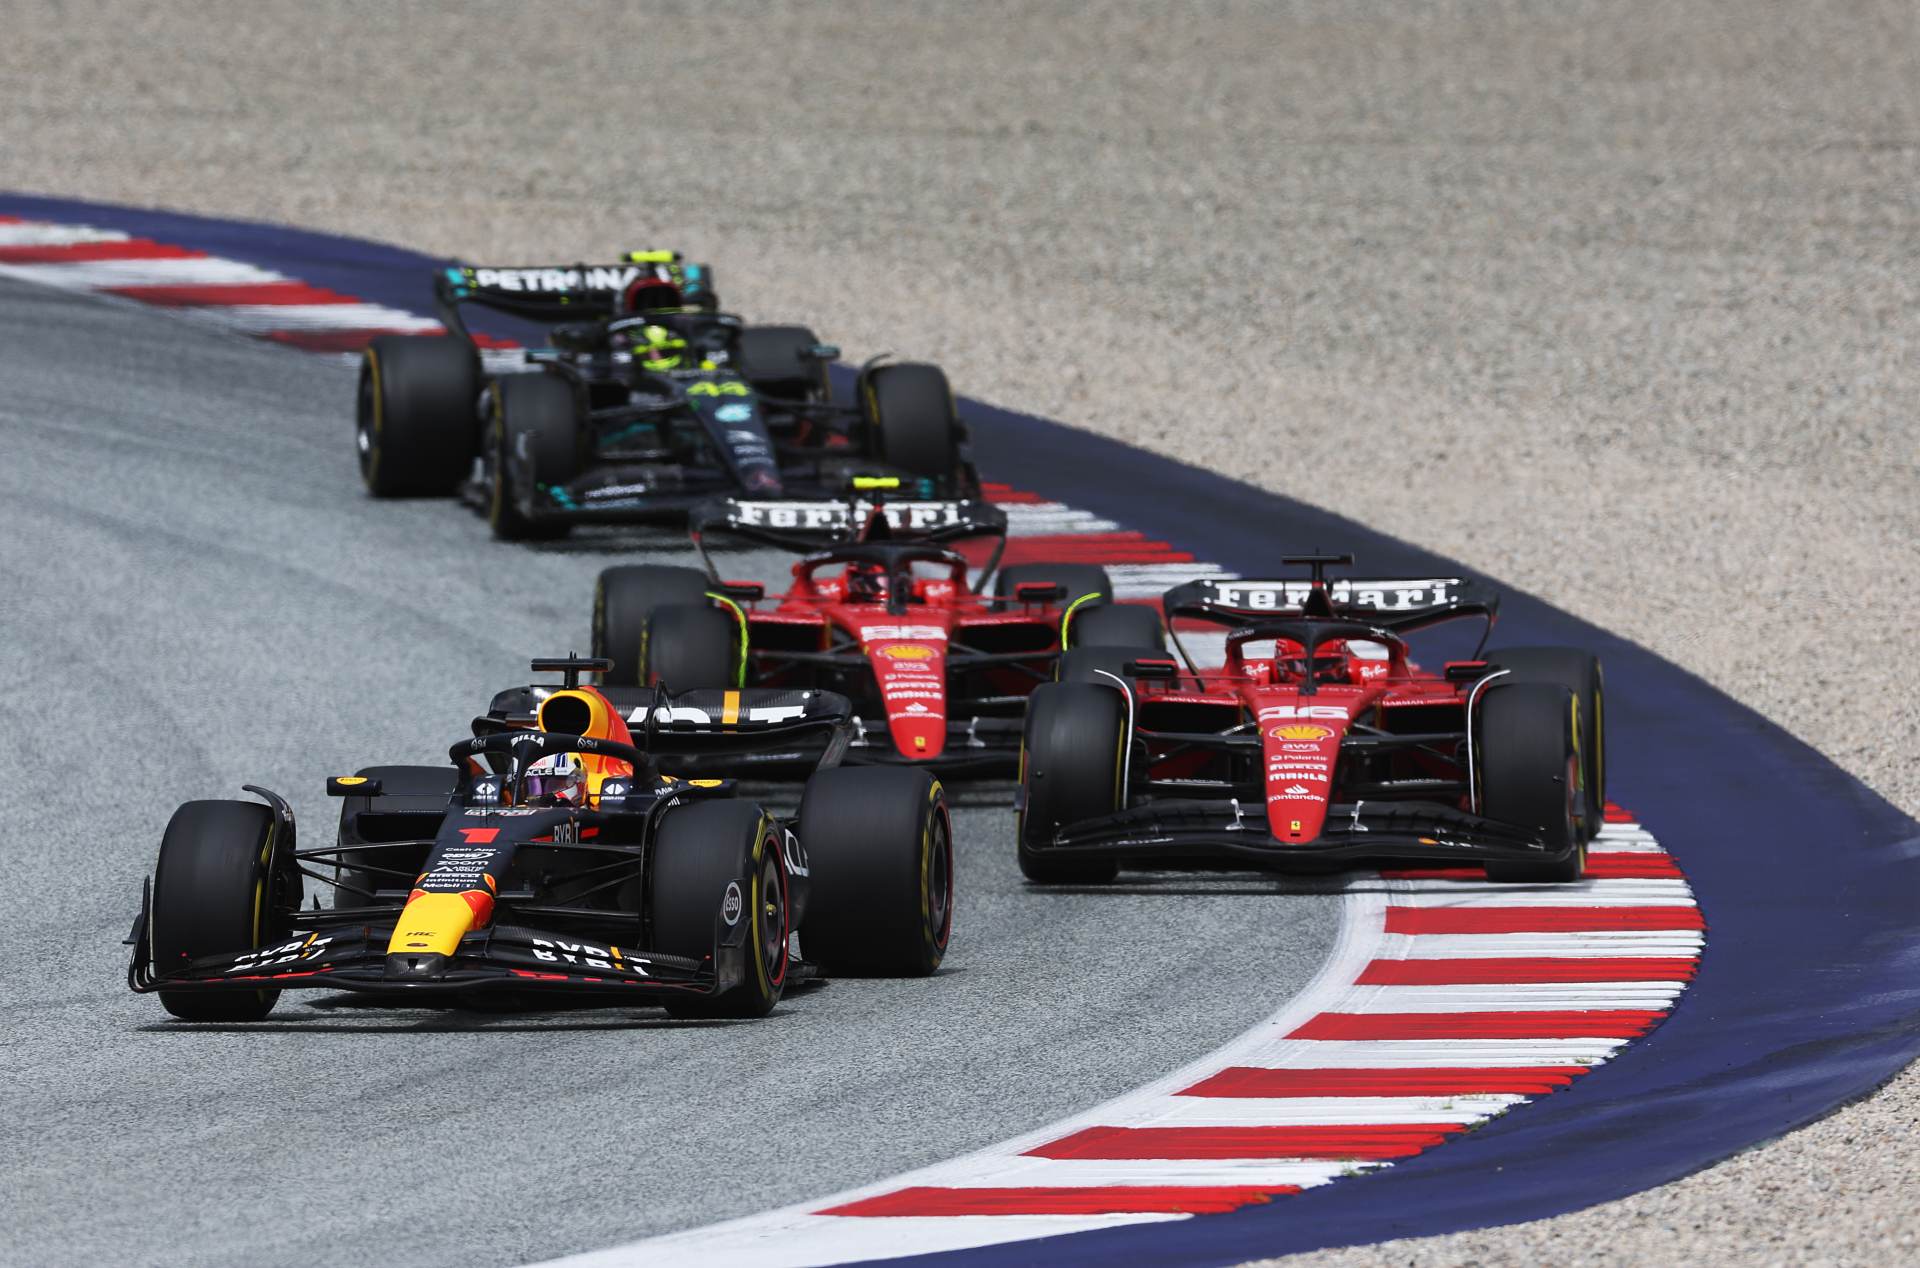 Verstappen domina e vence GP da Áustria com festival de punições. Leclerc é 2º